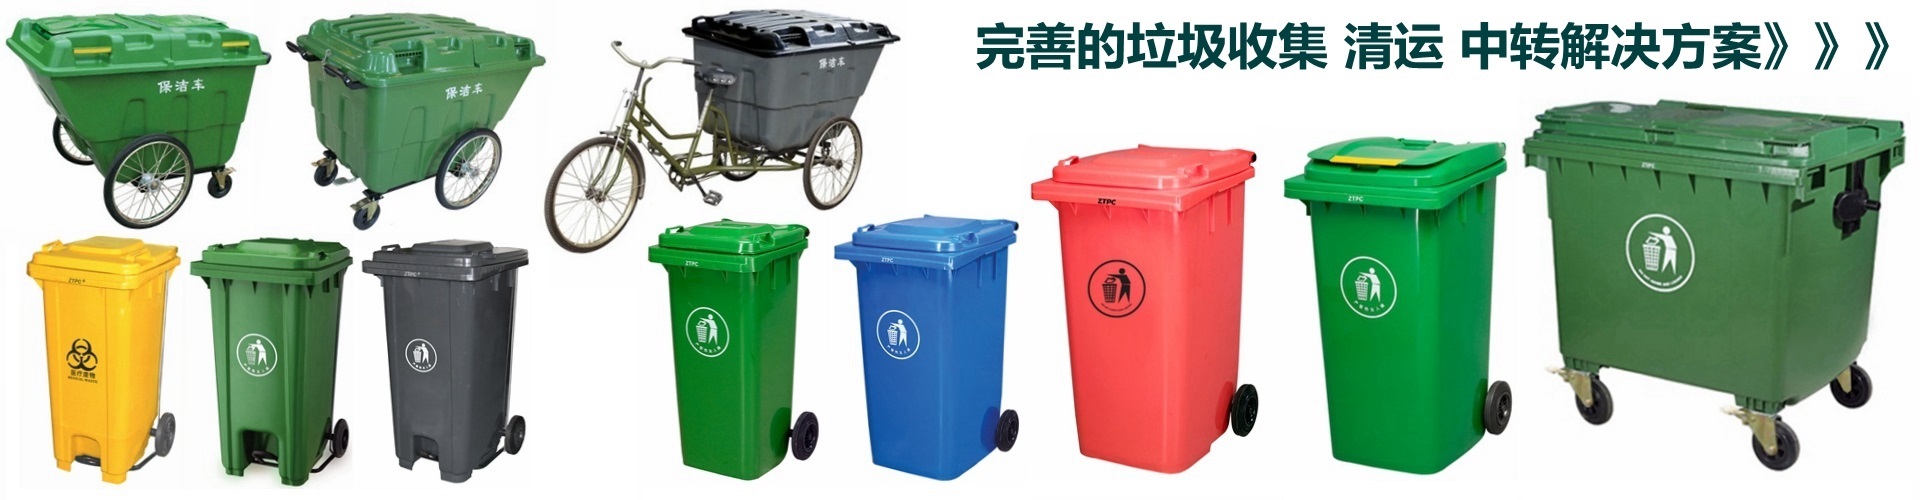 塑料垃圾桶3